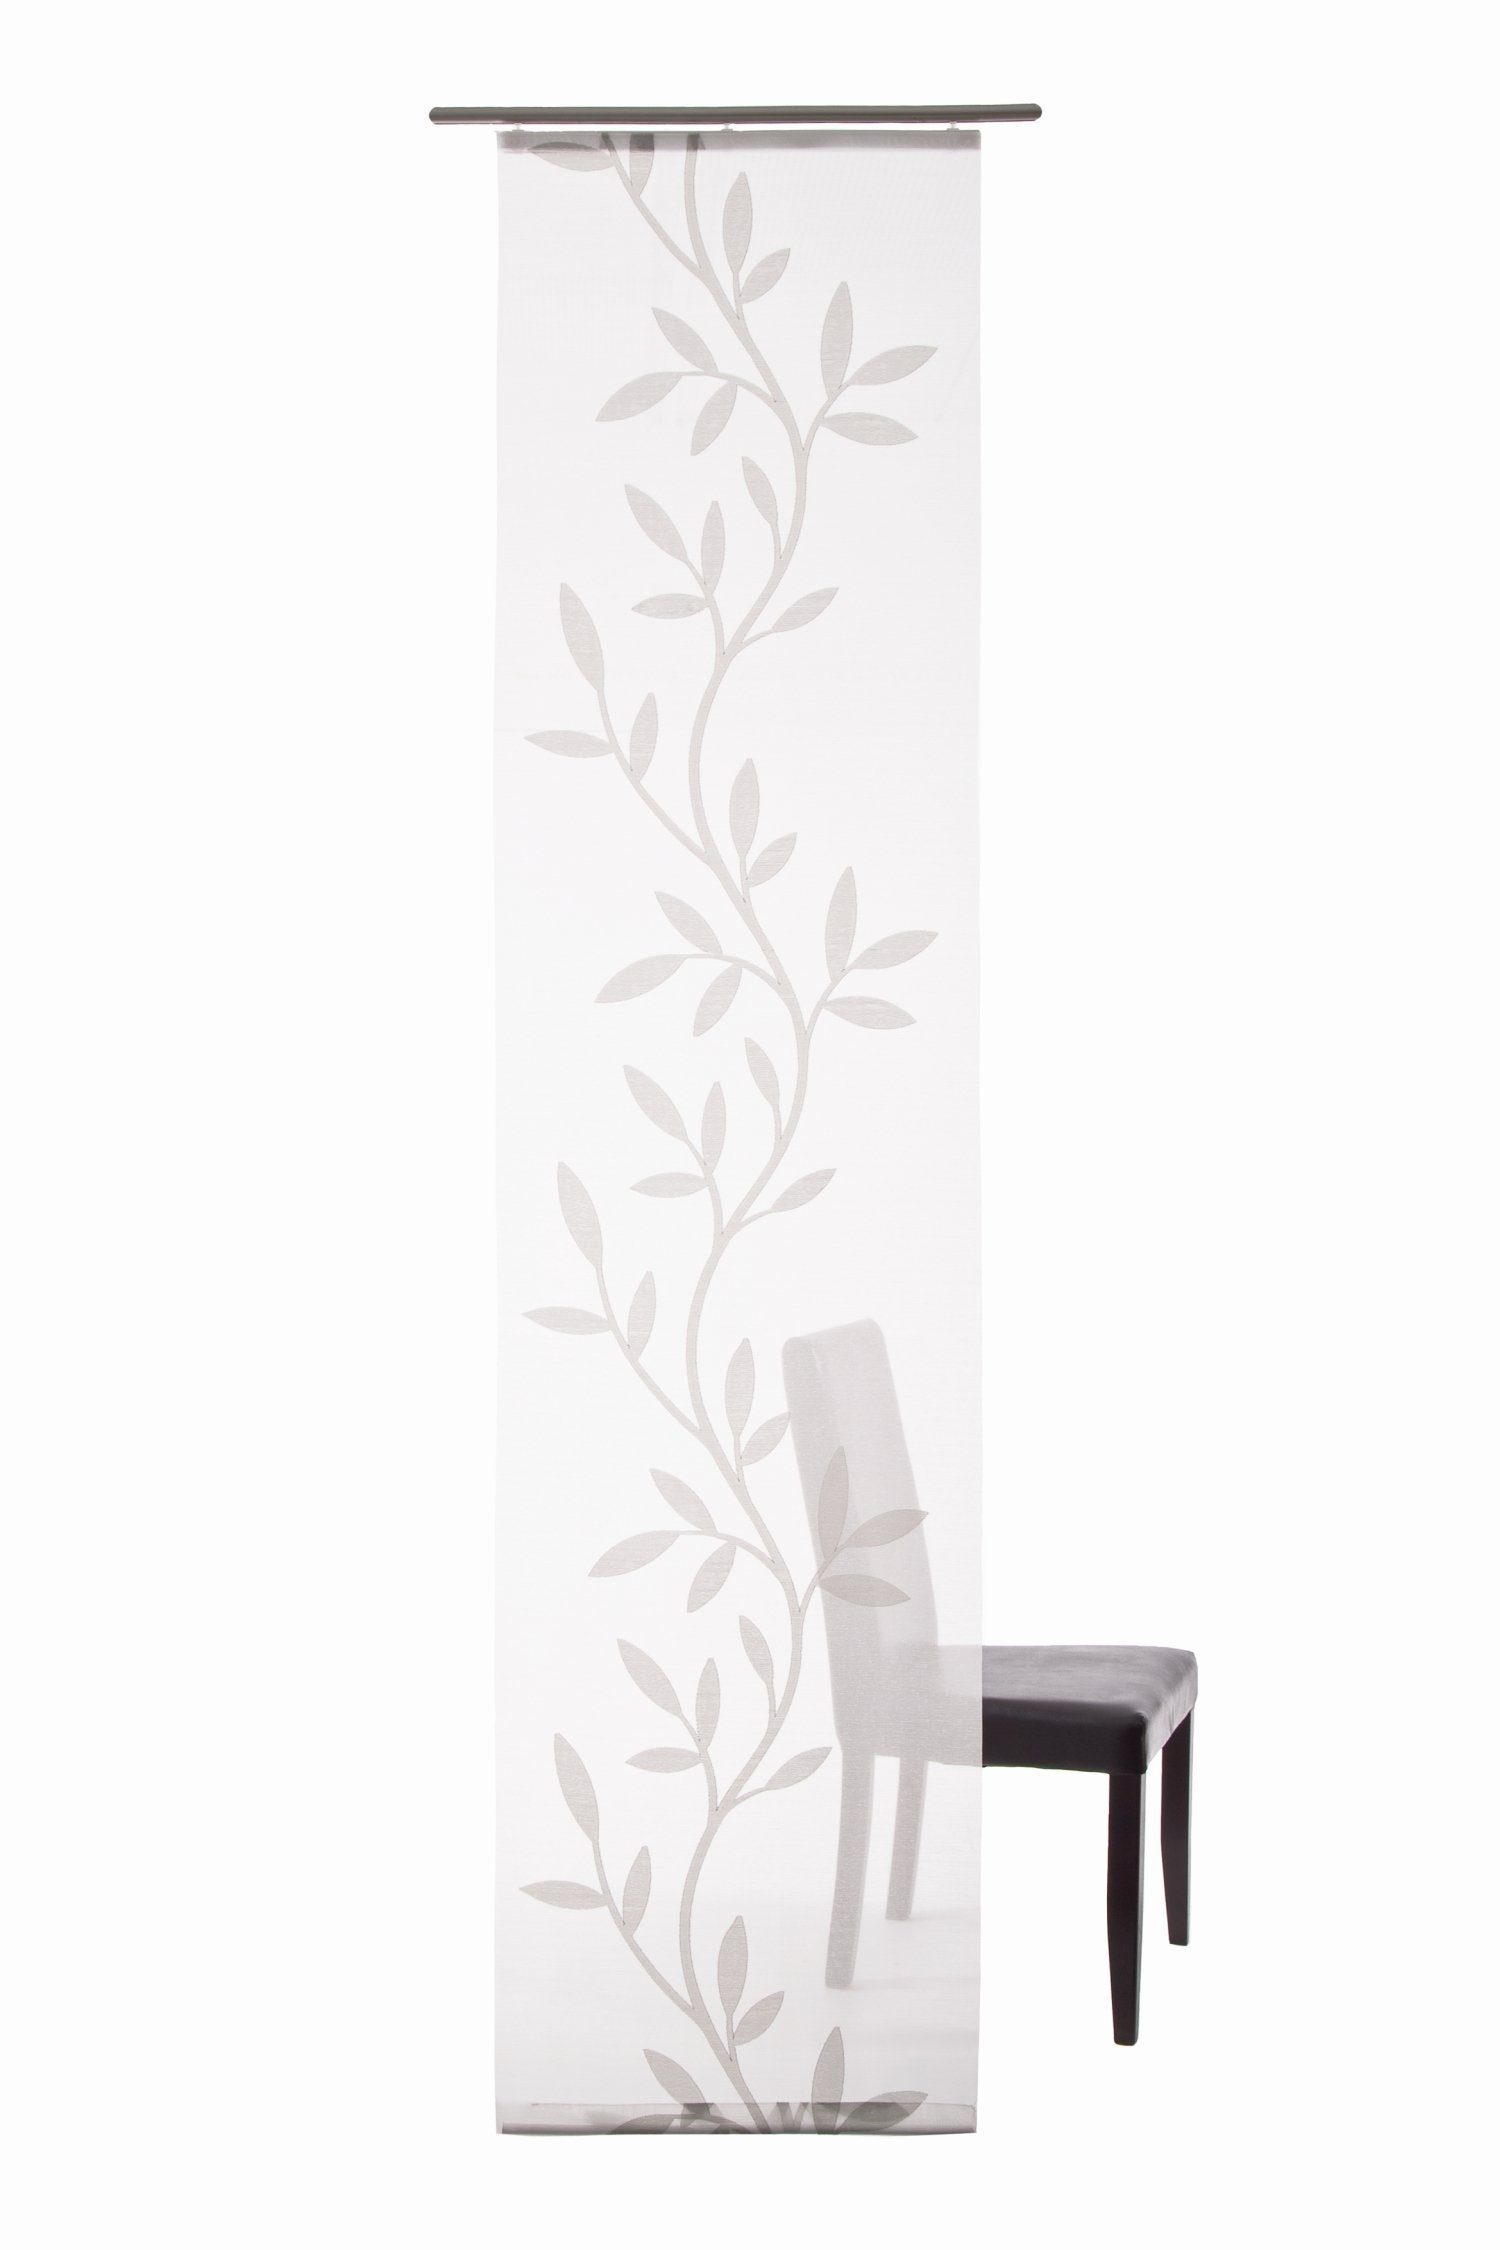 Lichtschutz, Flächenvorhang Vorhang, weiß, grau Farbe: Olivia 60x245cm HOMING,